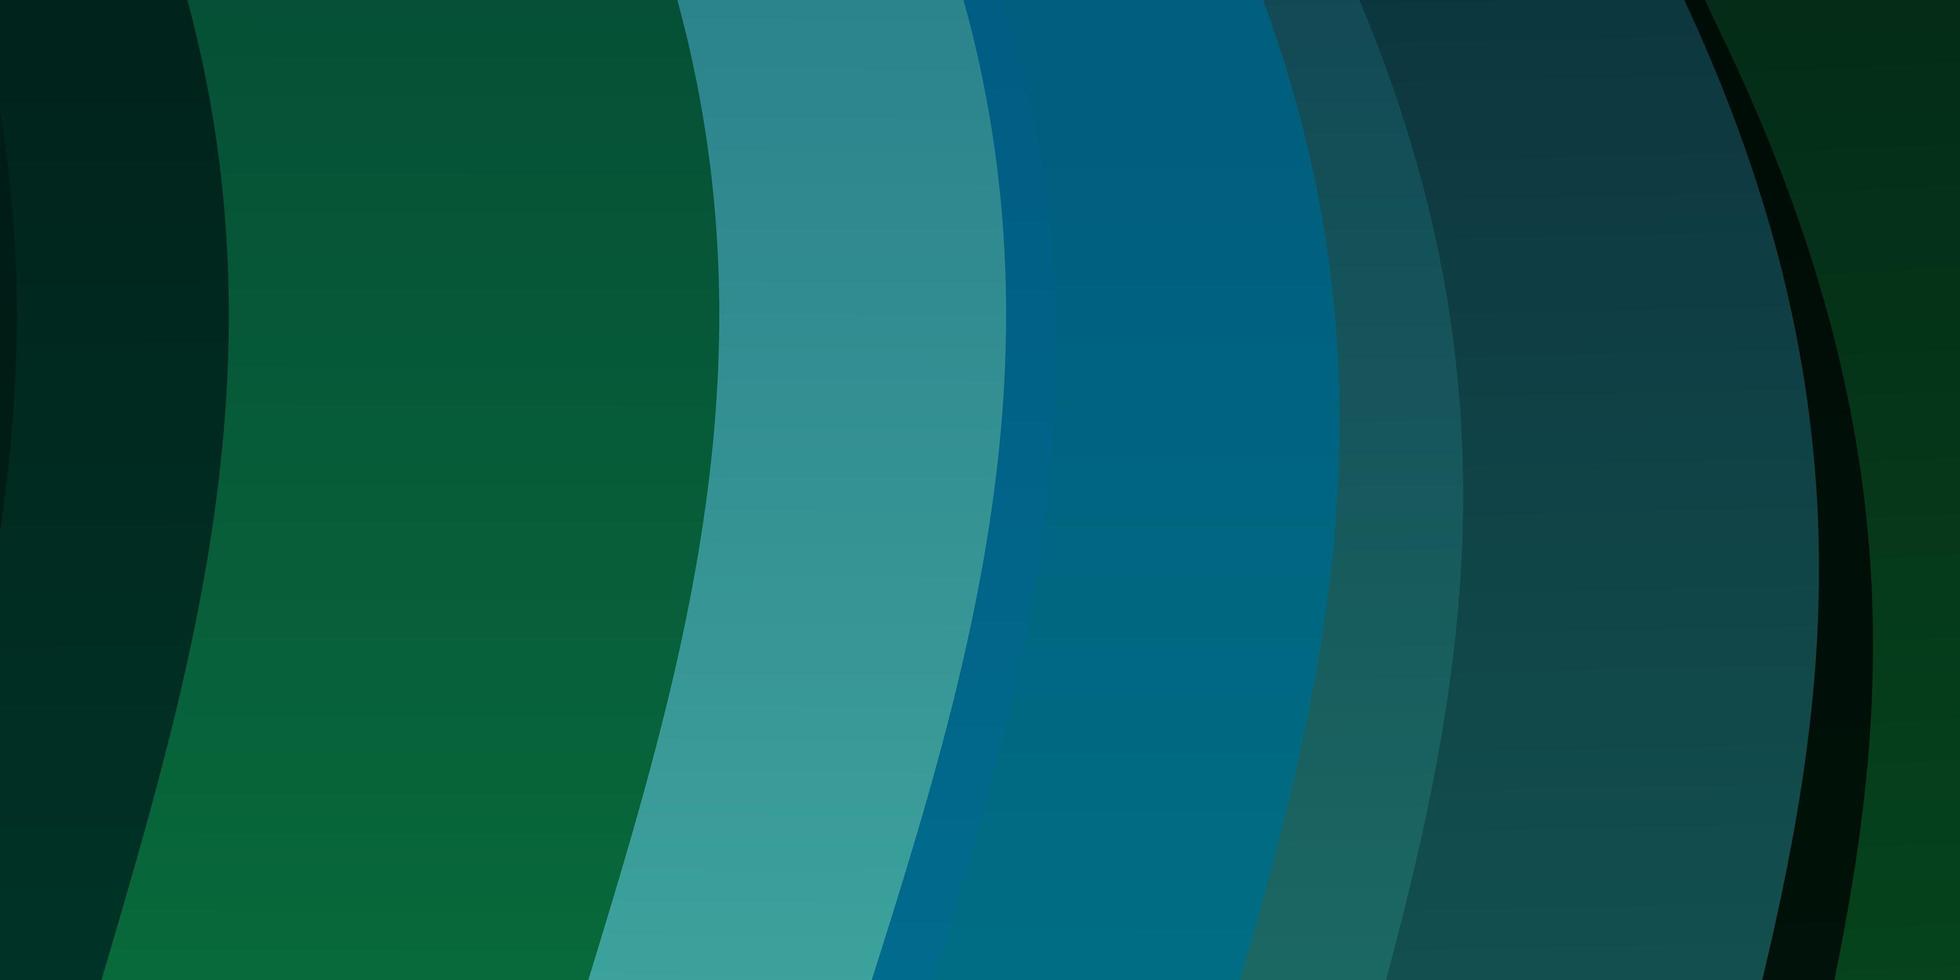 sfondo vettoriale azzurro verde con arco circolare illustrazione luminosa con motivo ad archi circolari sfumati per opuscoli aziendali opuscoli